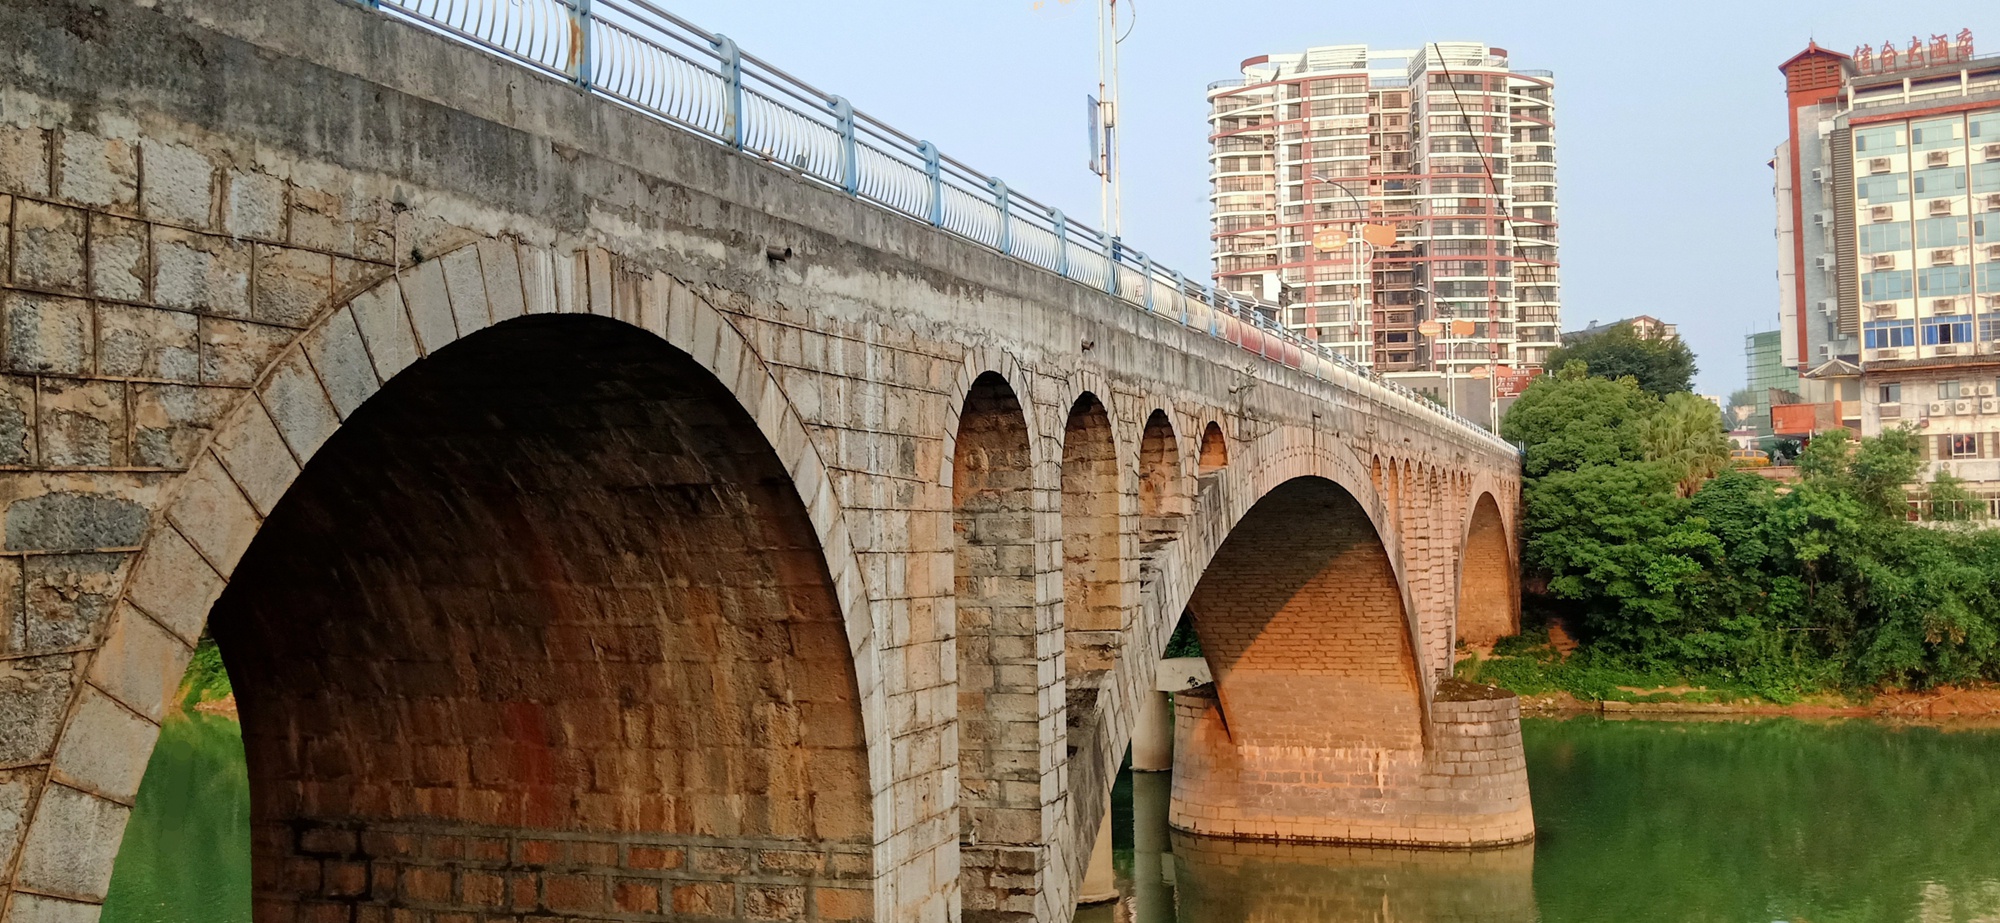 恭城老茶江大桥哪年建造167 / 作者:陈爱国 / 帖子ID:271574